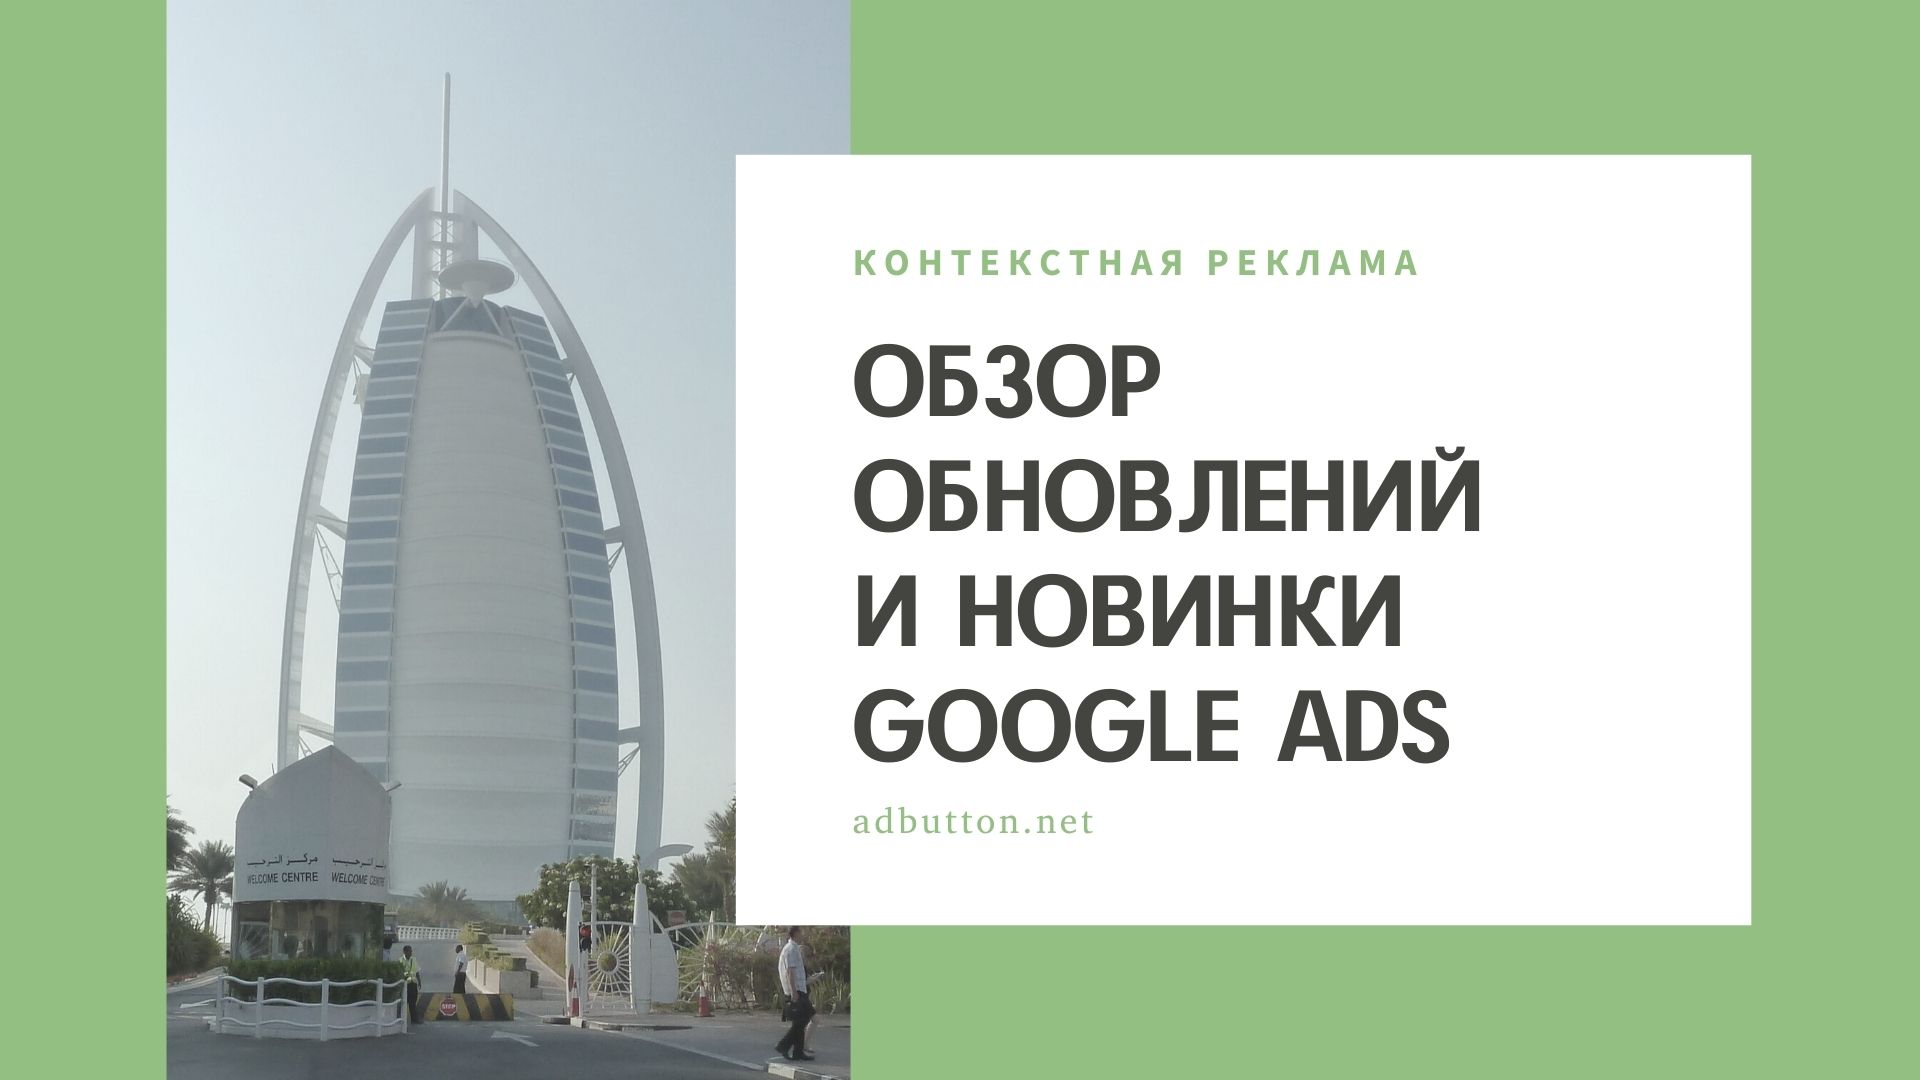 Новинки и обновления контекстной рекламы Google Ads